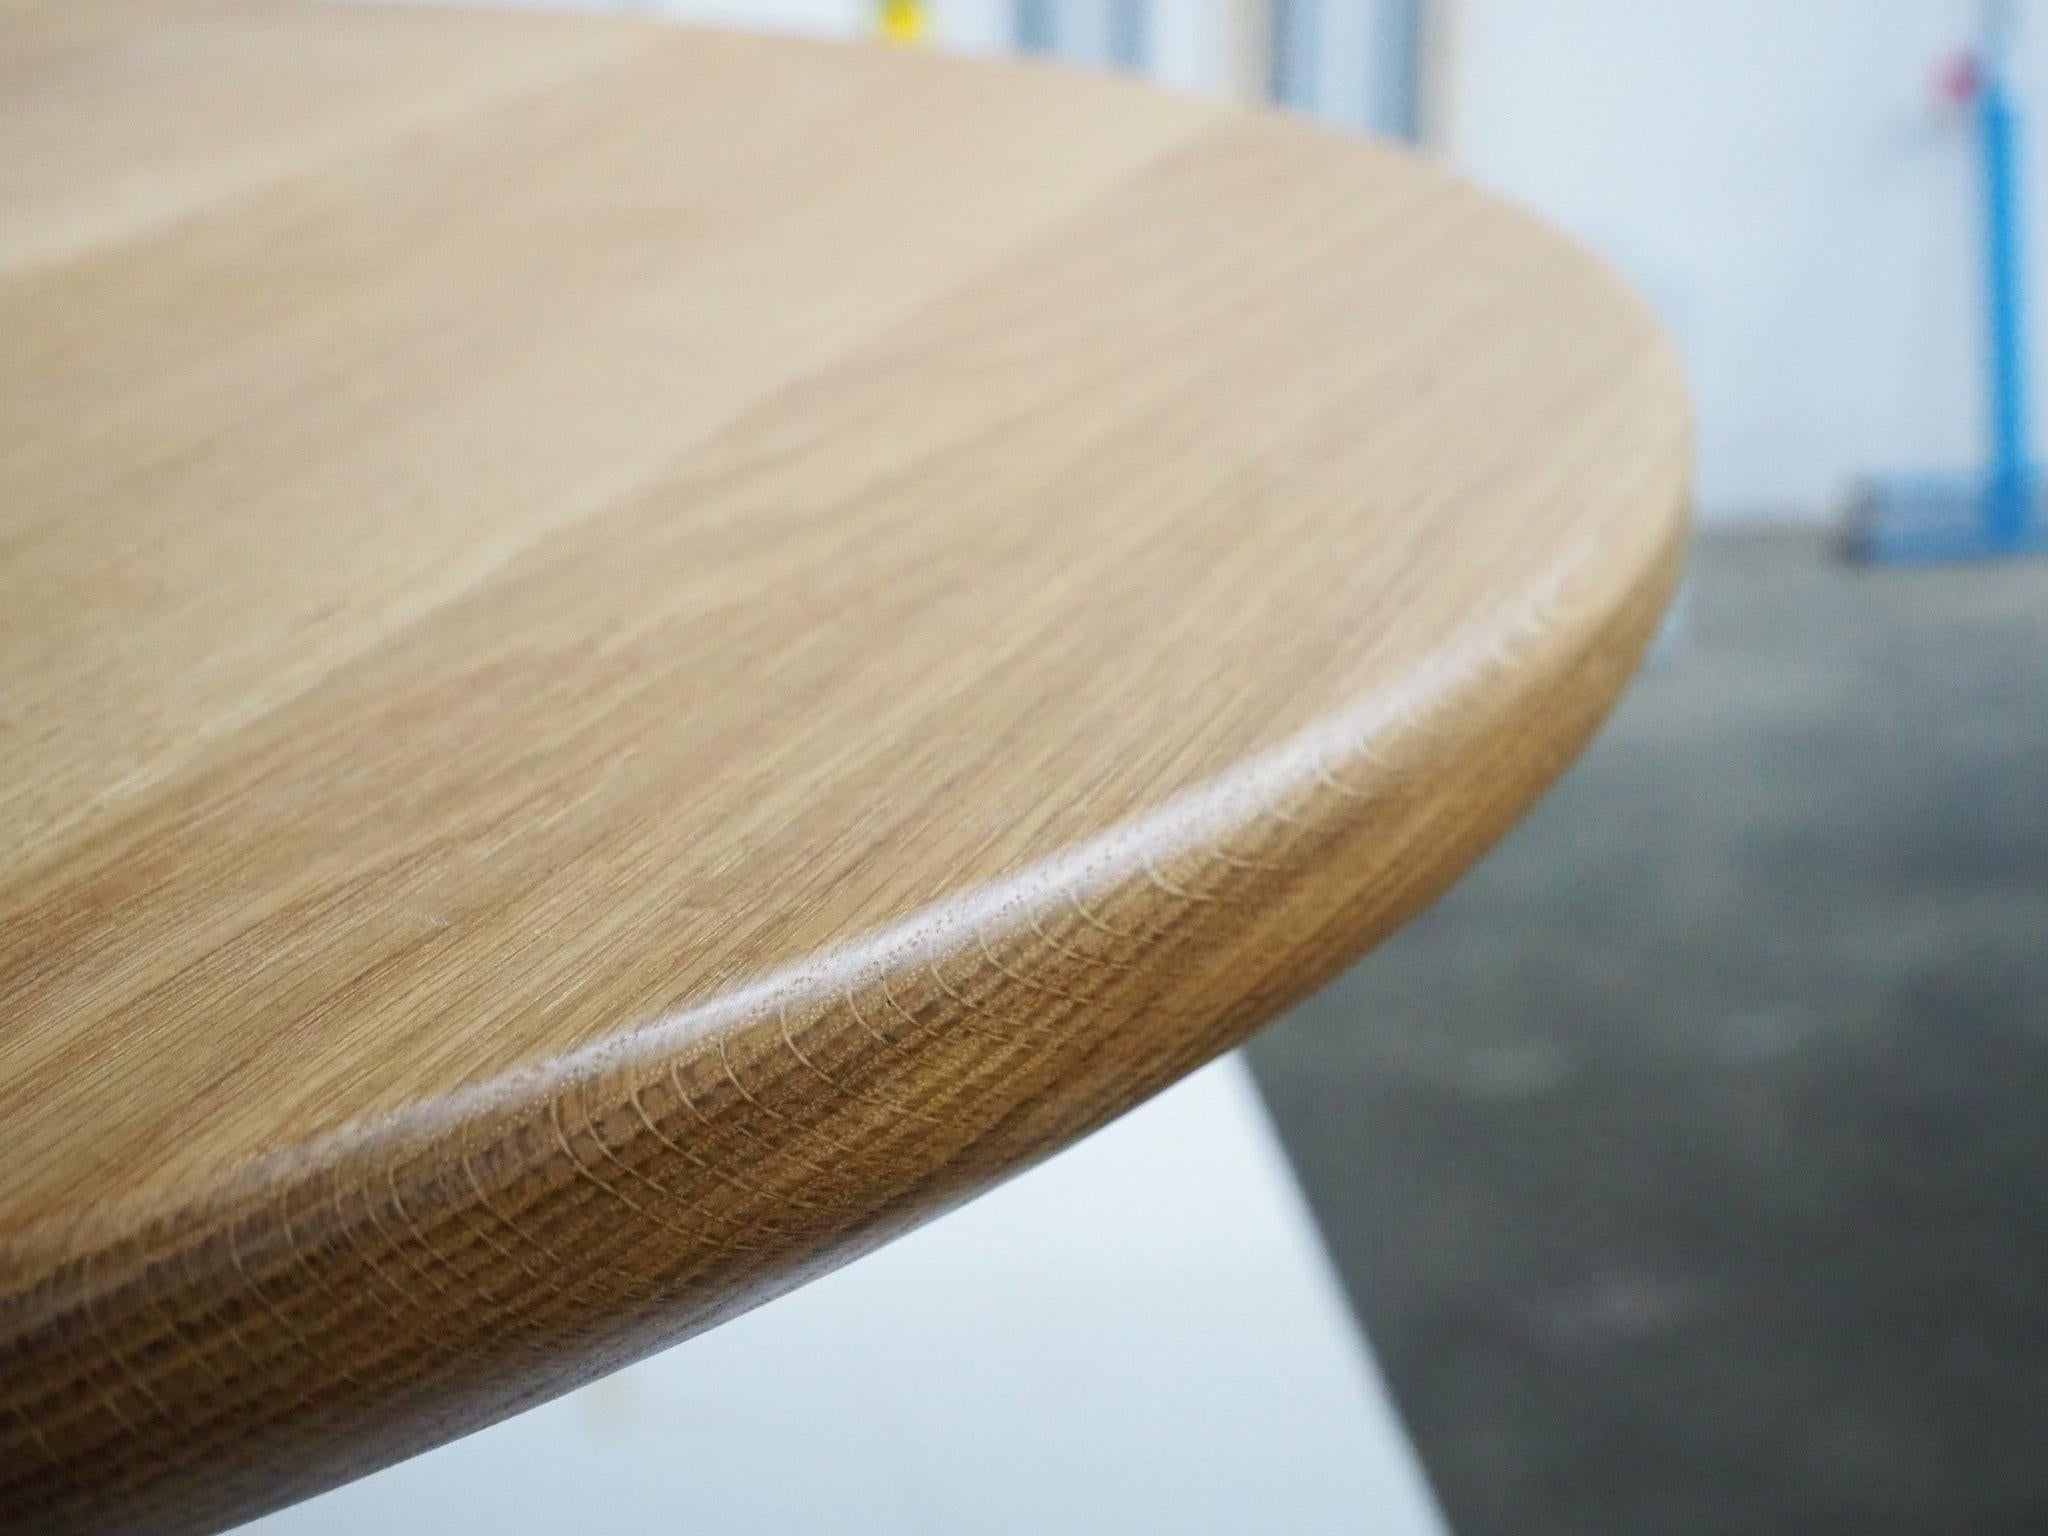 Cuando diseñamos la mesa Lutra, queríamos hacer una mesa divertida pero también sofisticada, sin dejar de tener un diseño más minimalista. Creemos que lo hemos conseguido en esta pieza. 

Presenta una parte superior circular con un bonito remate